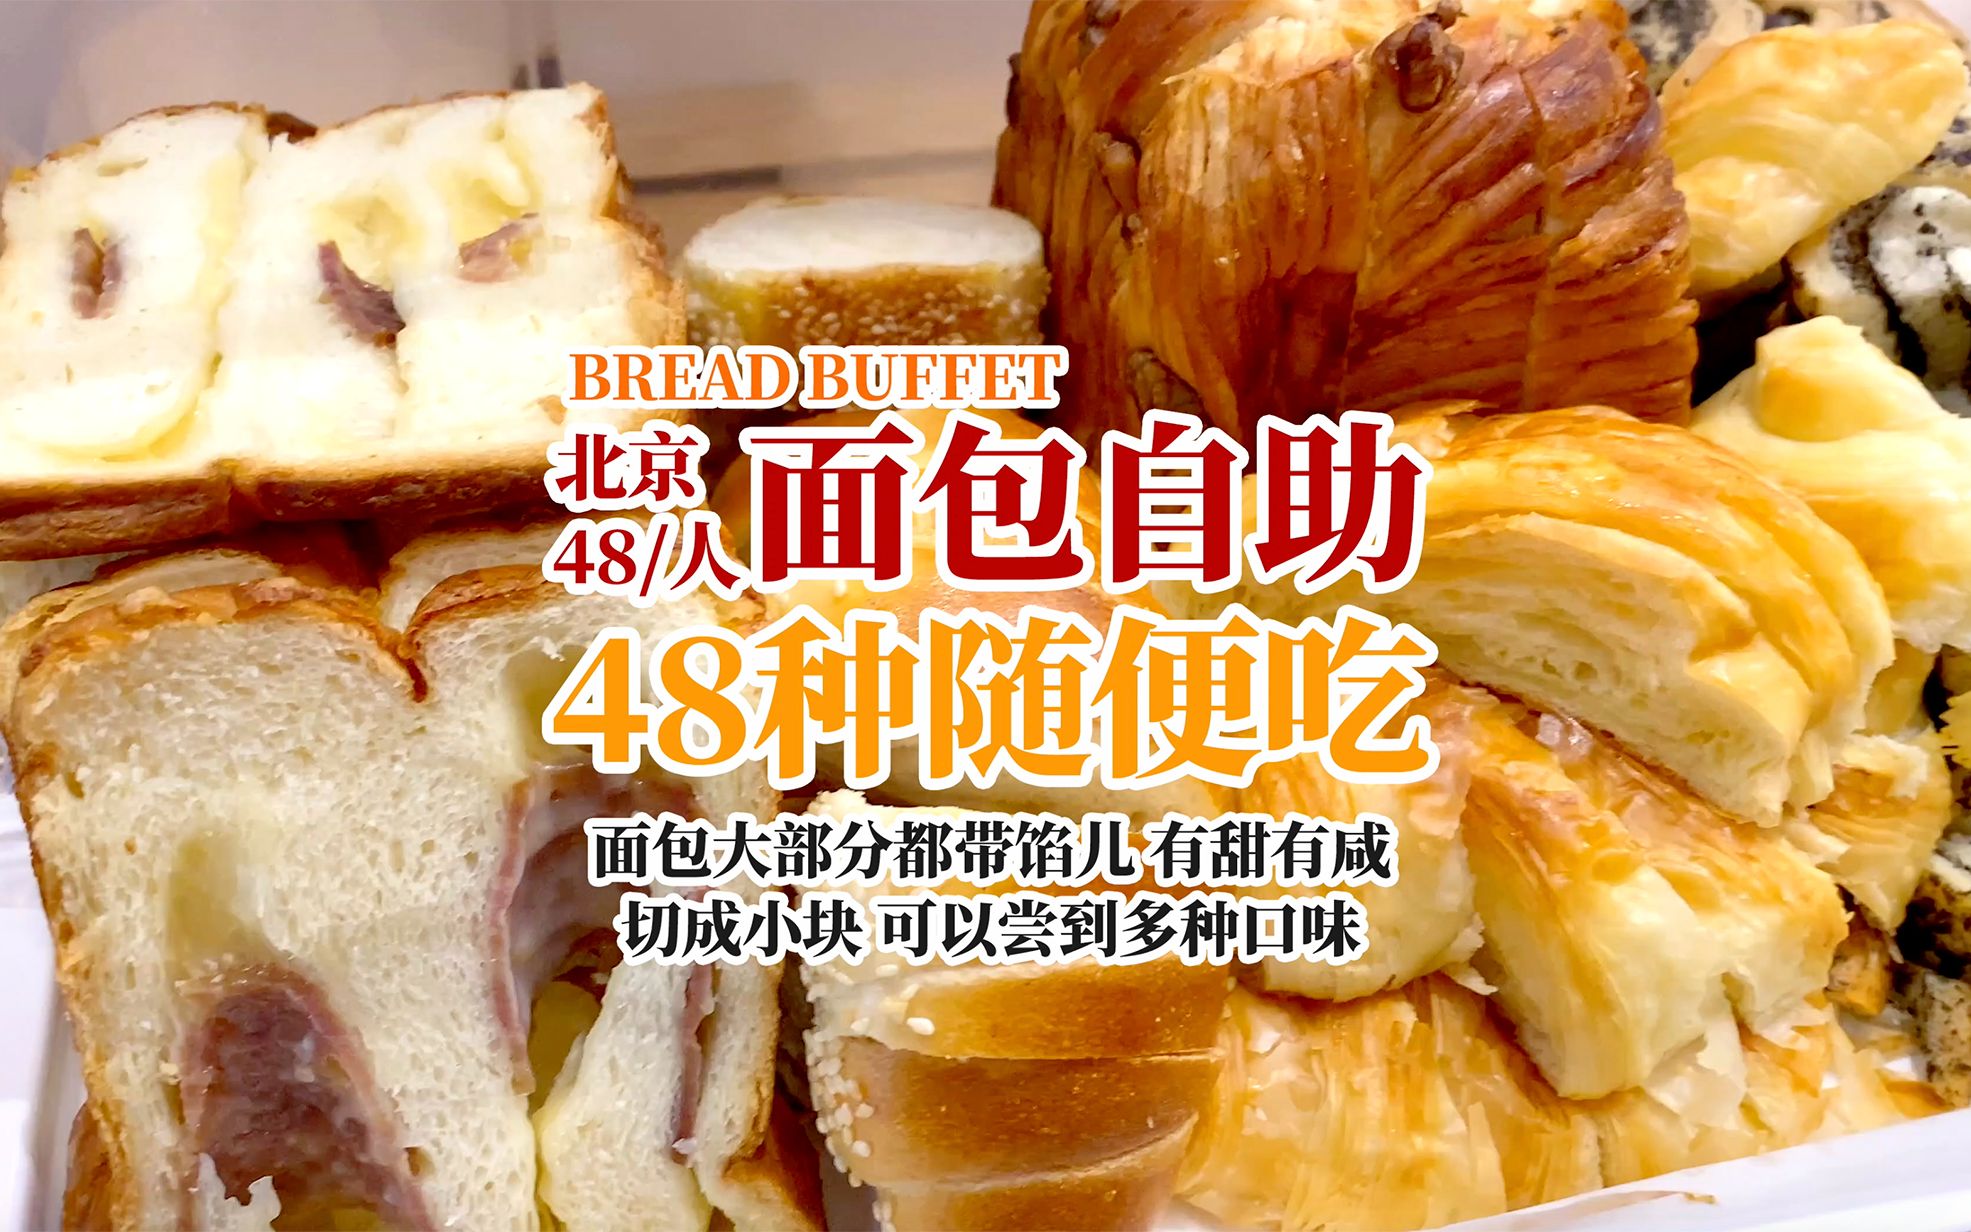 北京这家能吃48种面包的自助 一个人48就能放开吃 咱一探究竟